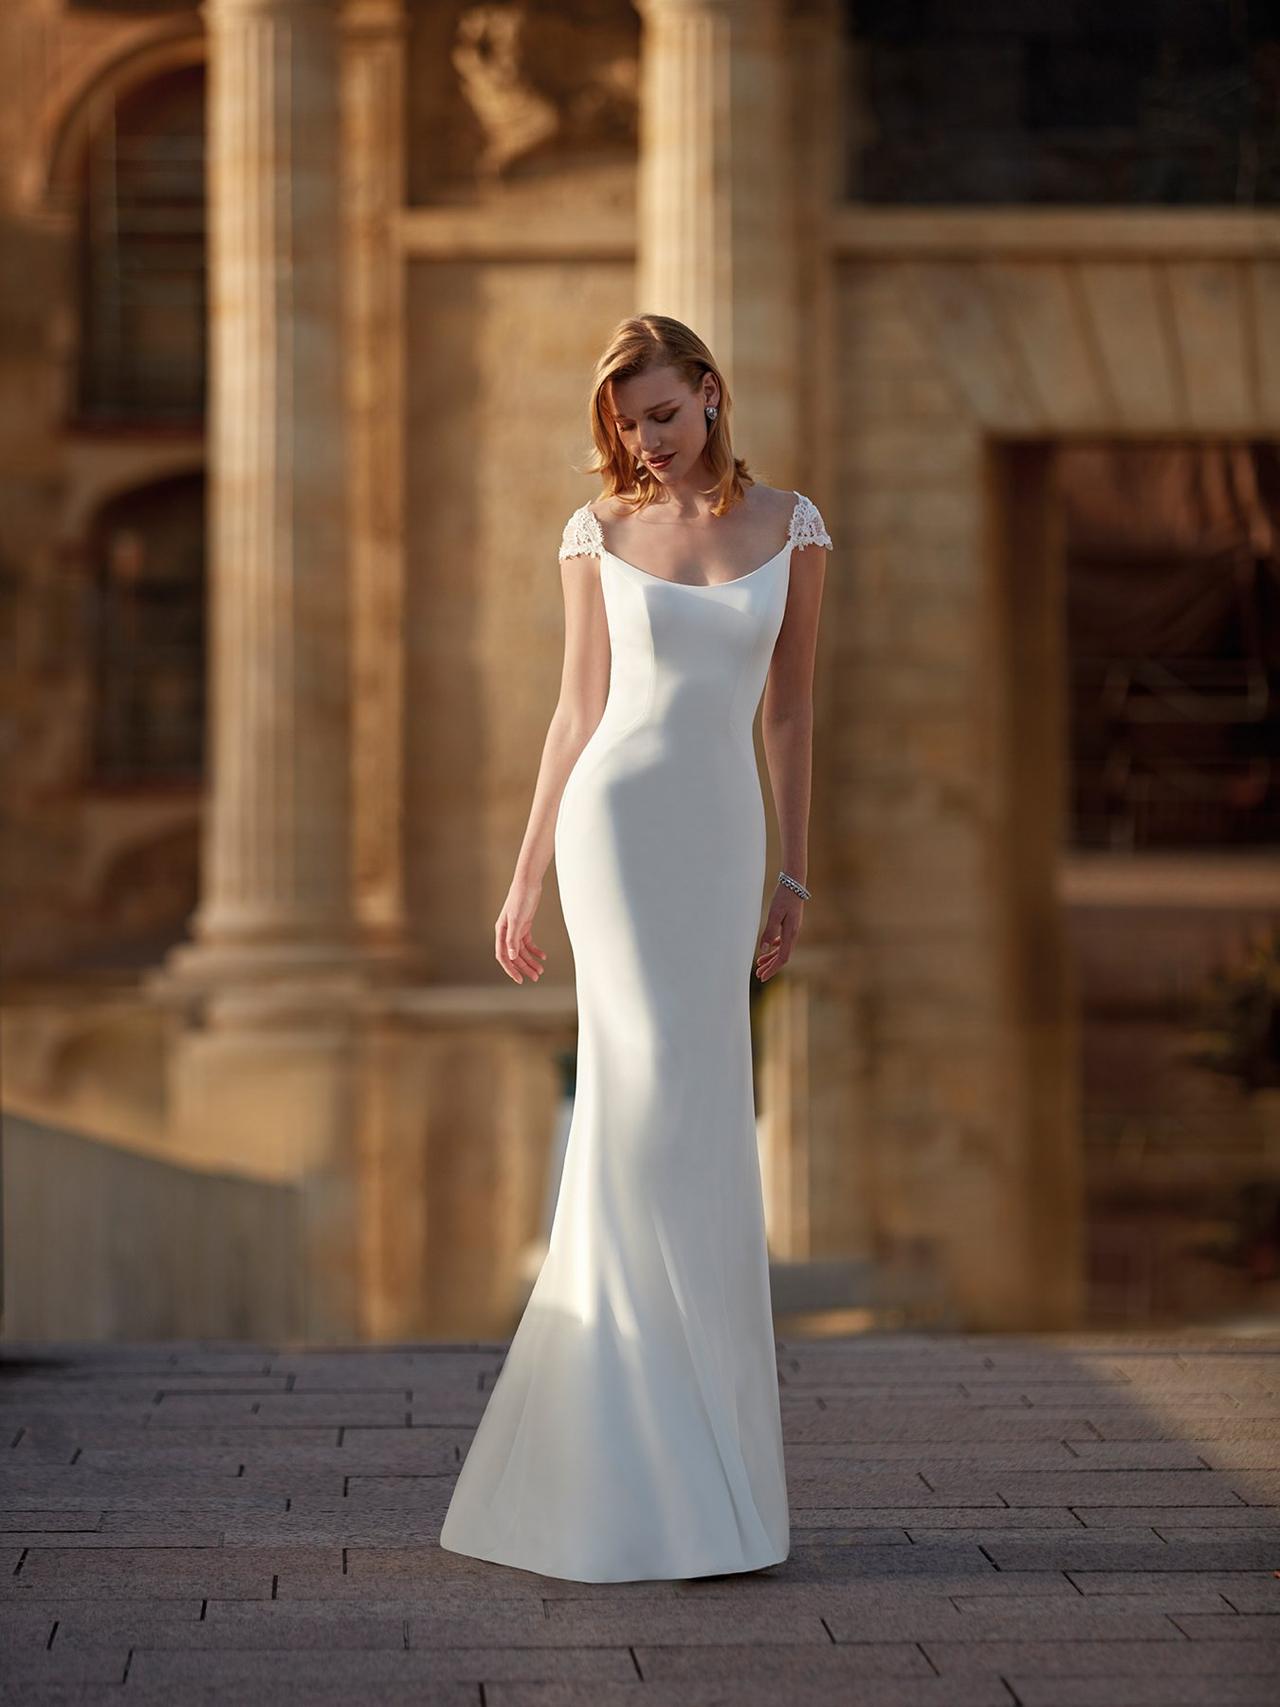 170 vestidos de novia civil: ¡los looks para casarte!